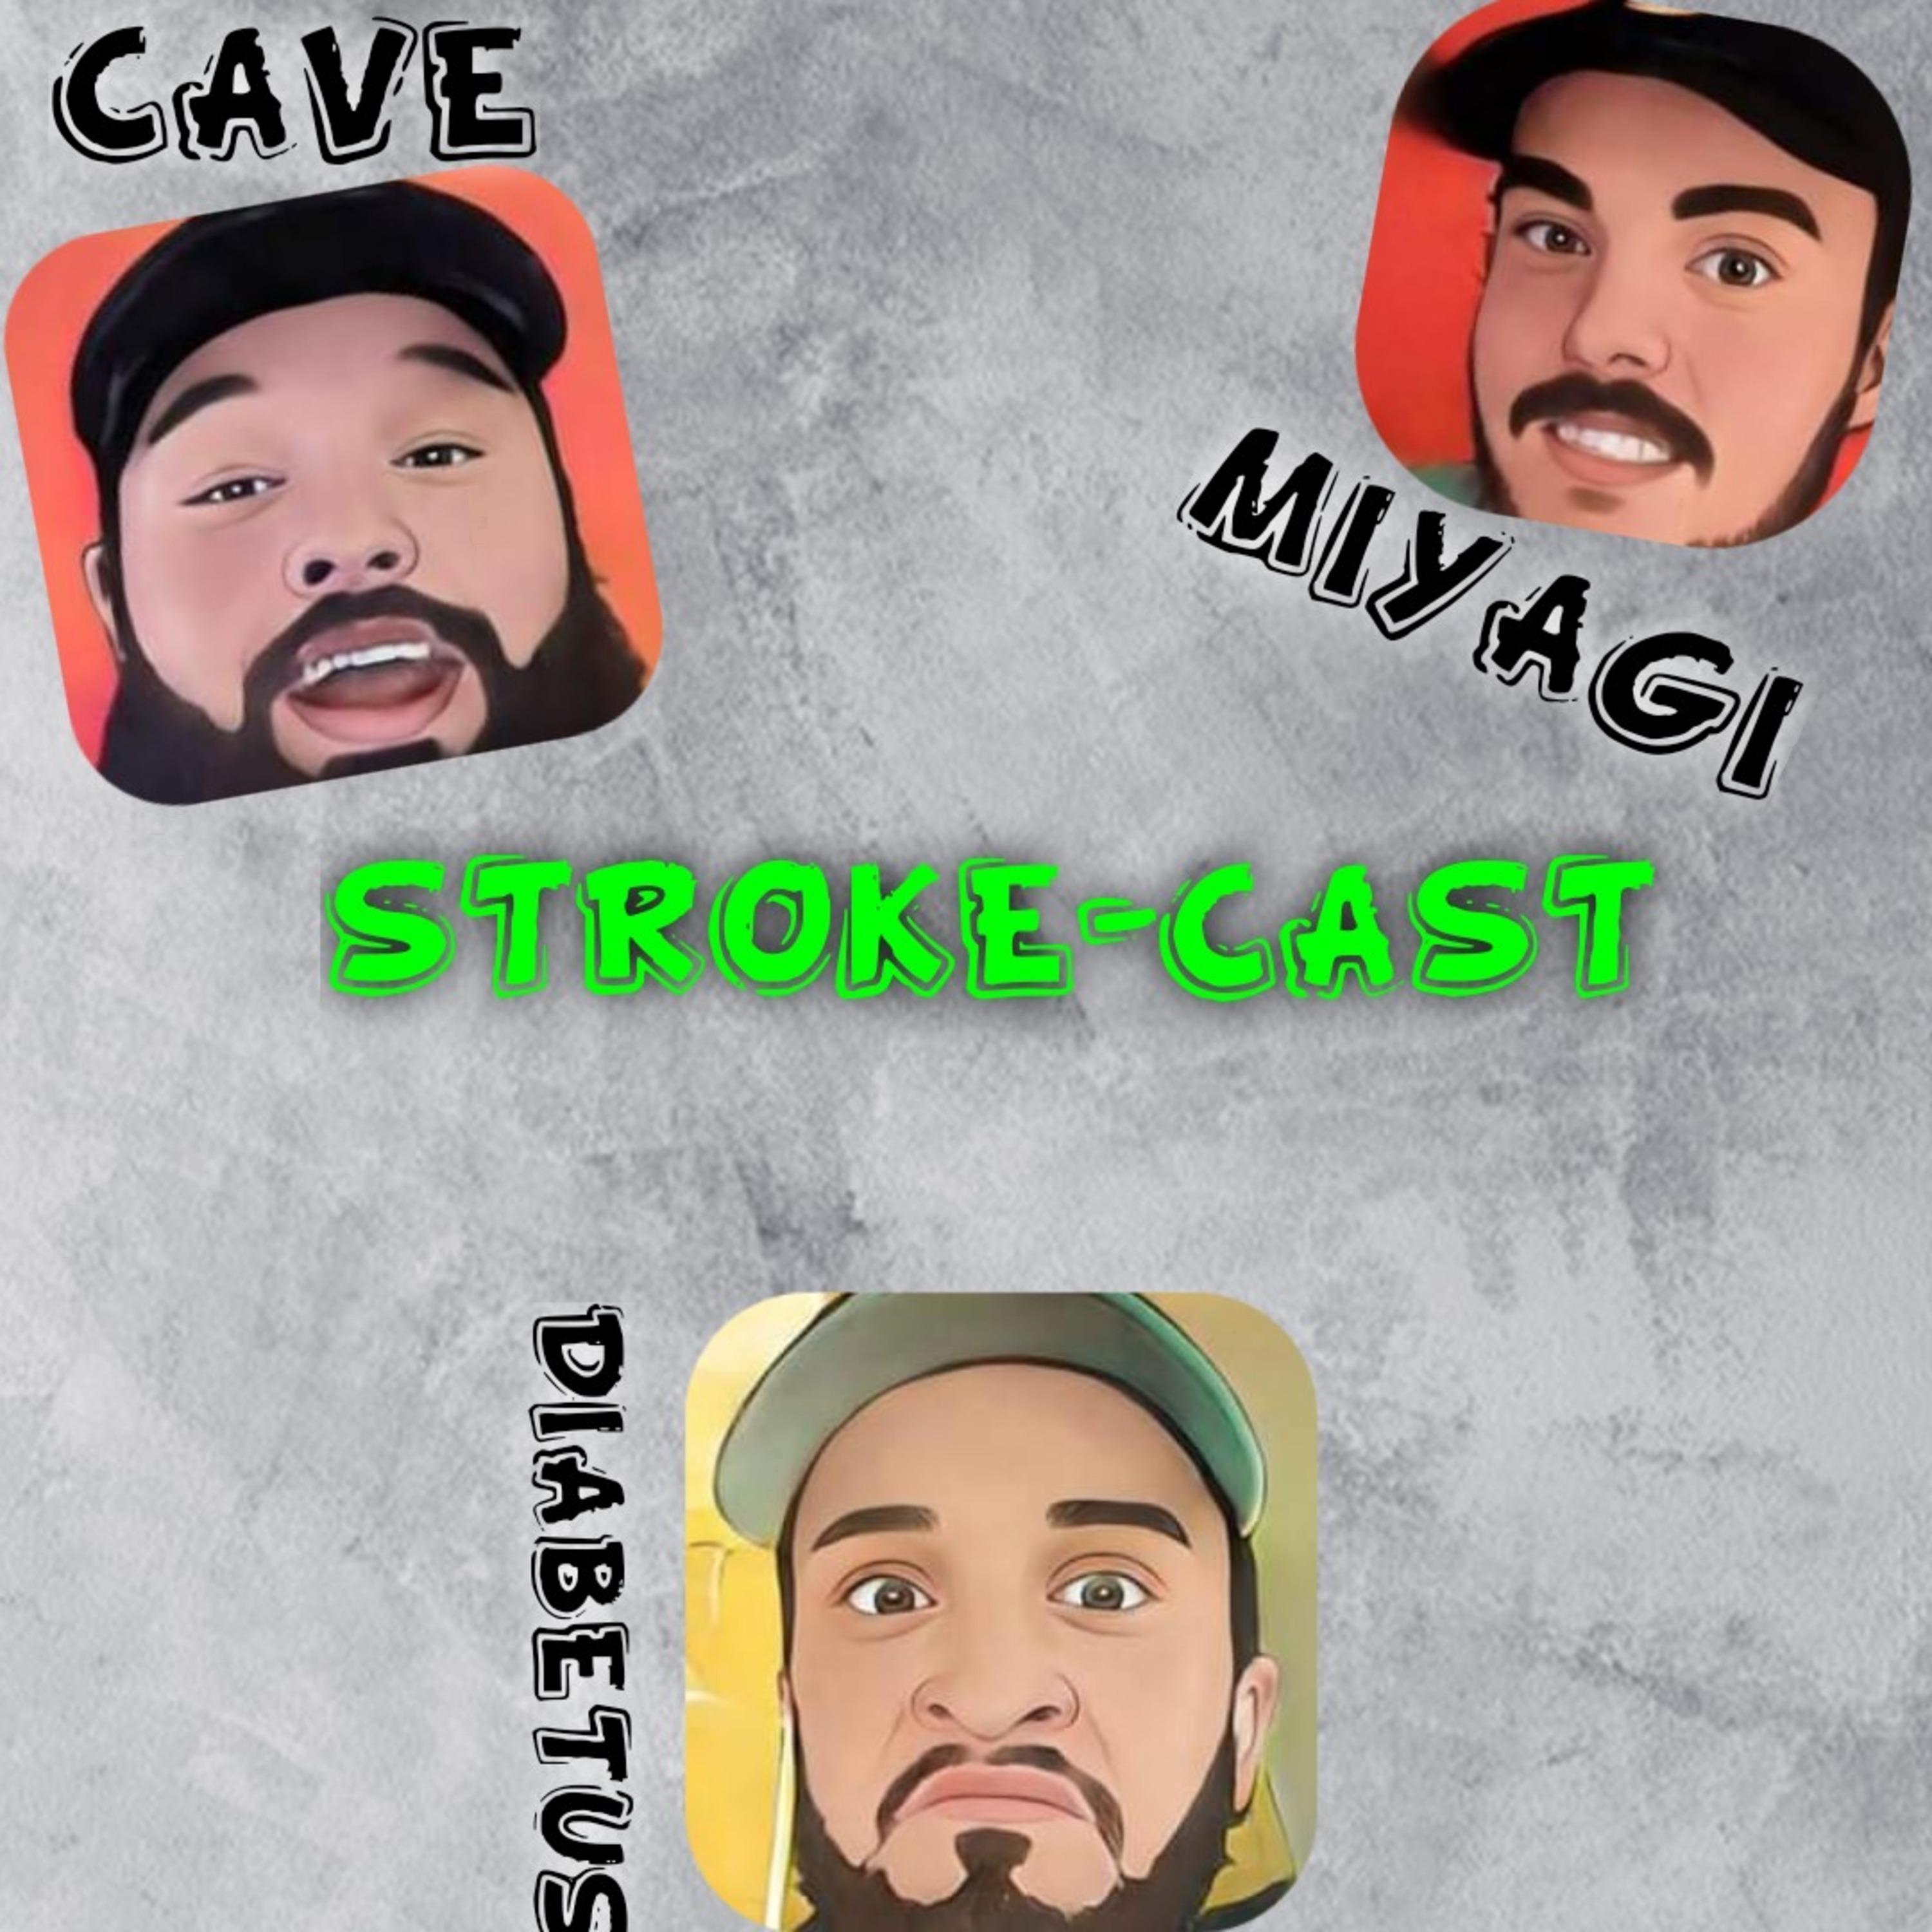 Stroke-Cast